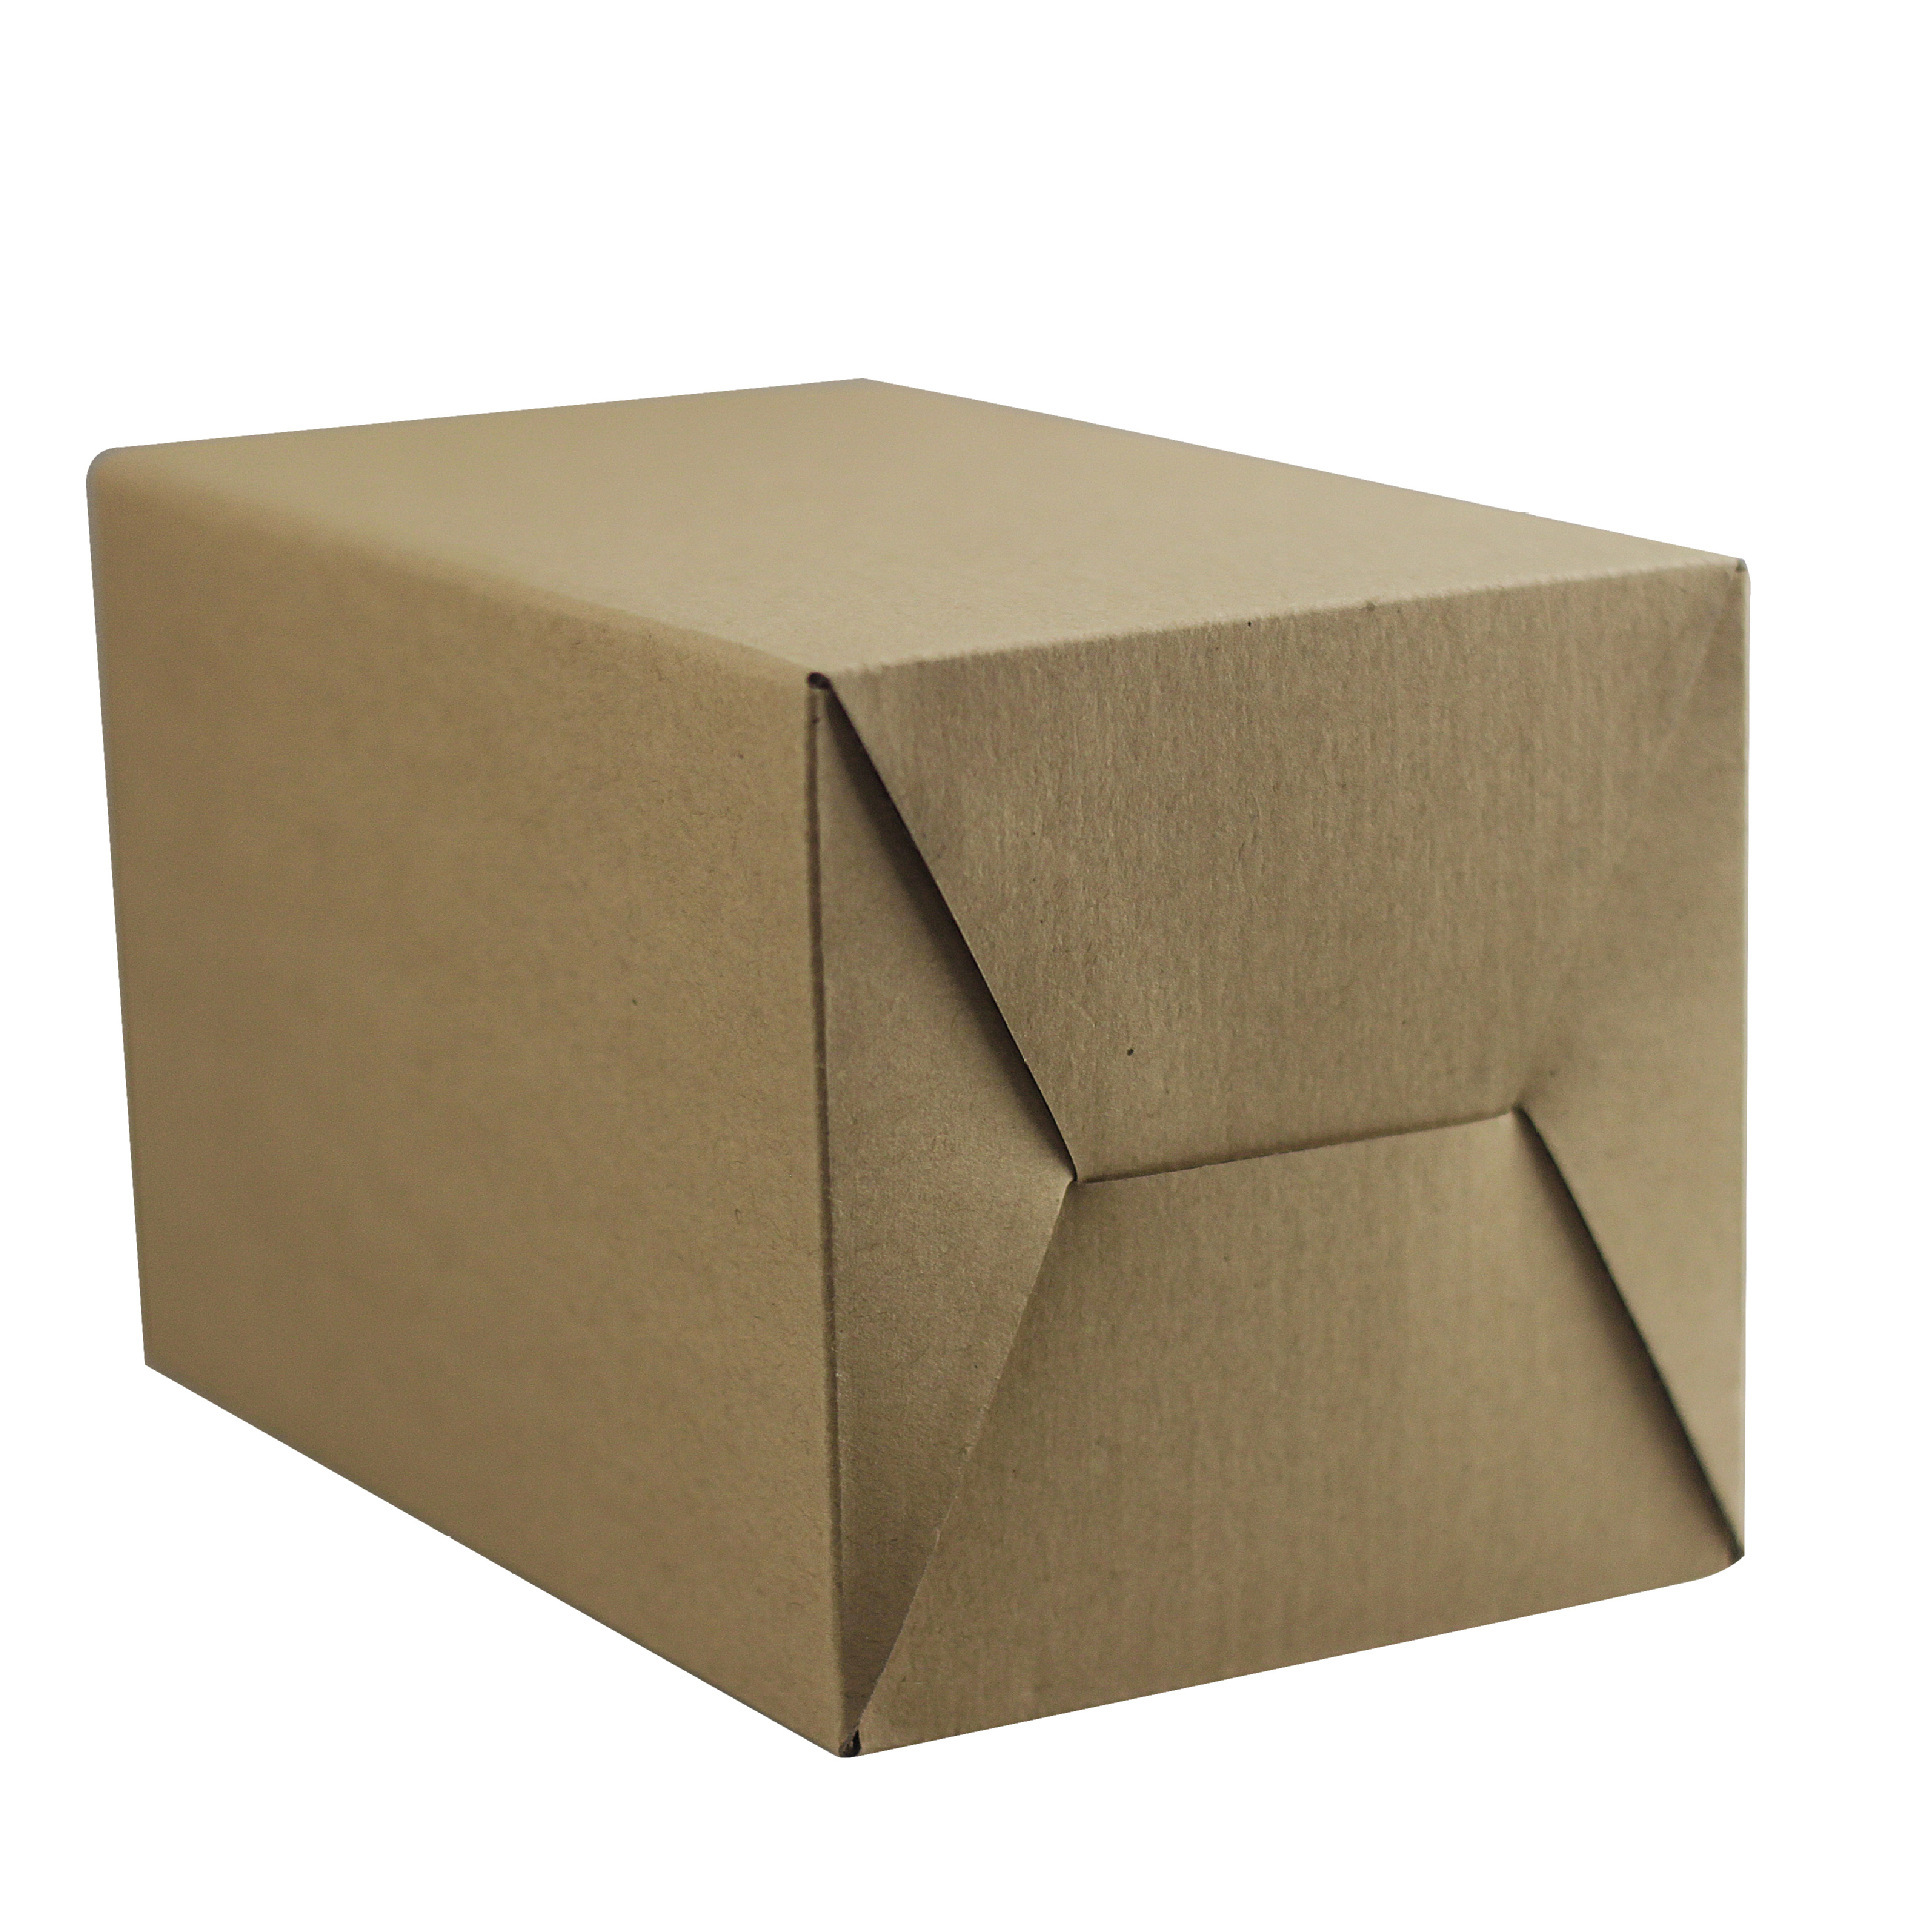 深圳市瓦楞纸盒厂家厂家供应坑纸盒定做 E瓦楞纸盒包装盒 彩色印刷牛皮纸包装盒